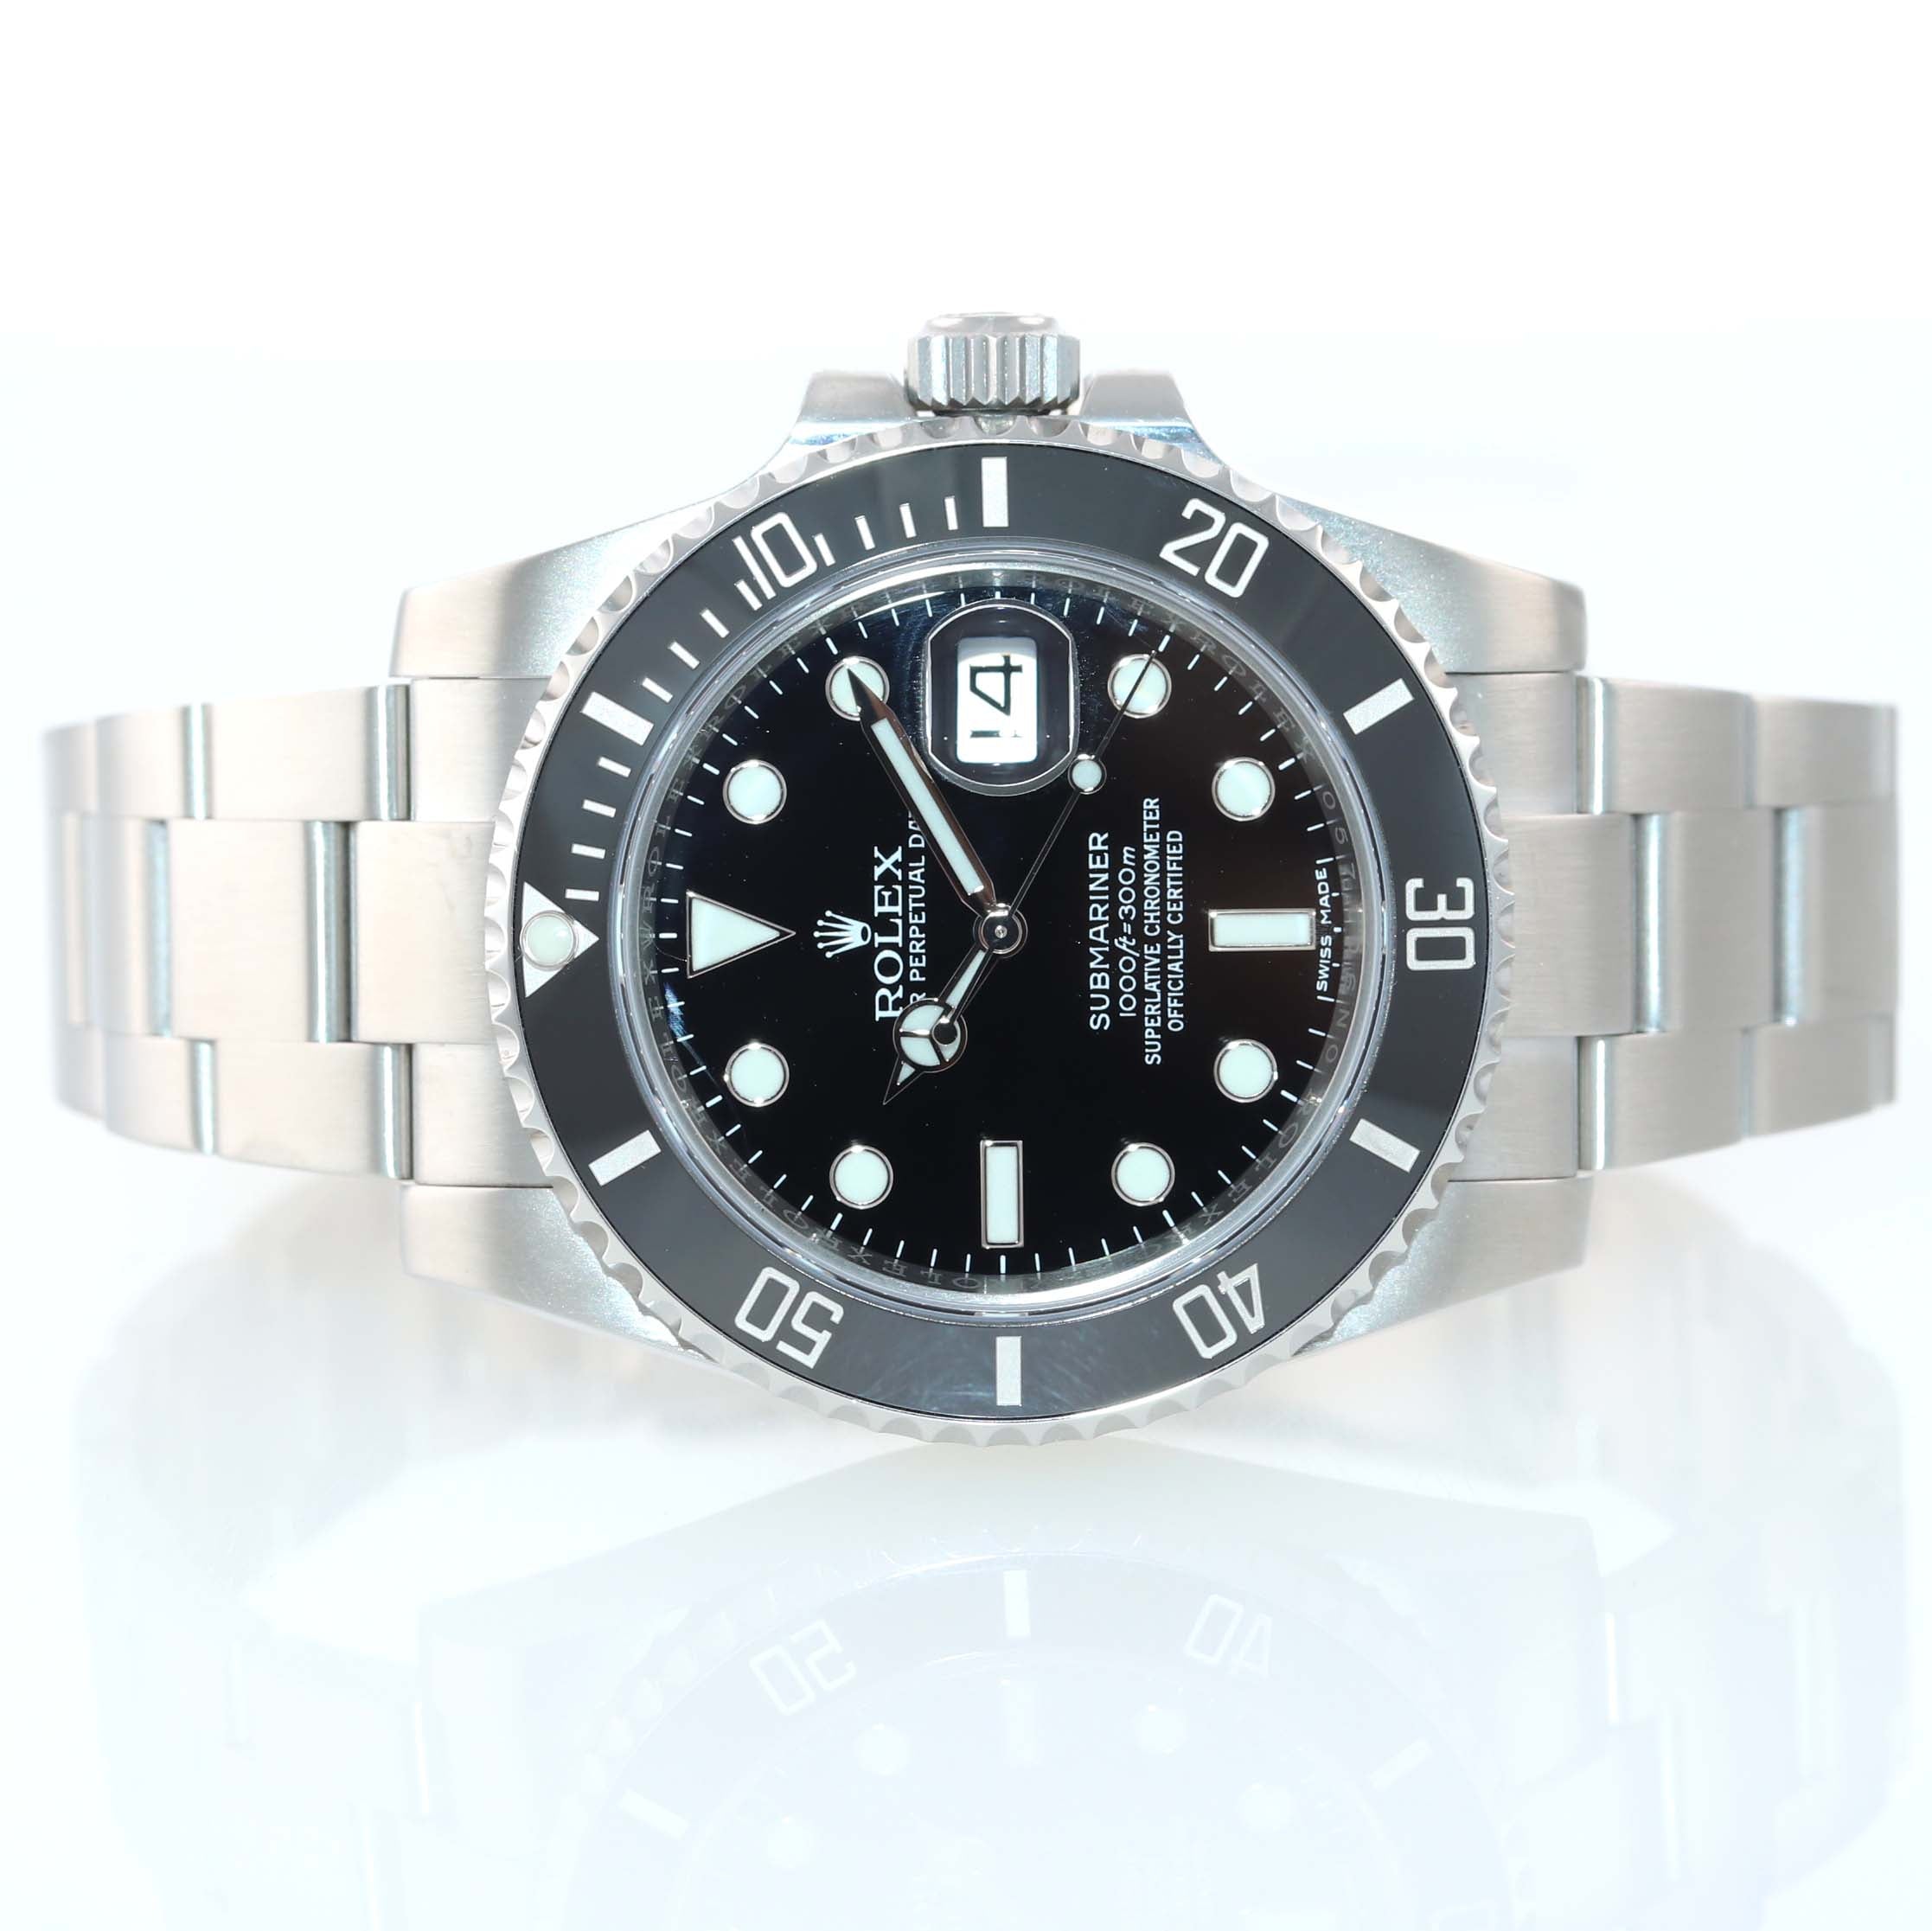 2017-2019 Rolex Submariner Date 116610 Steel Black Ceramic Bezel Watch Box